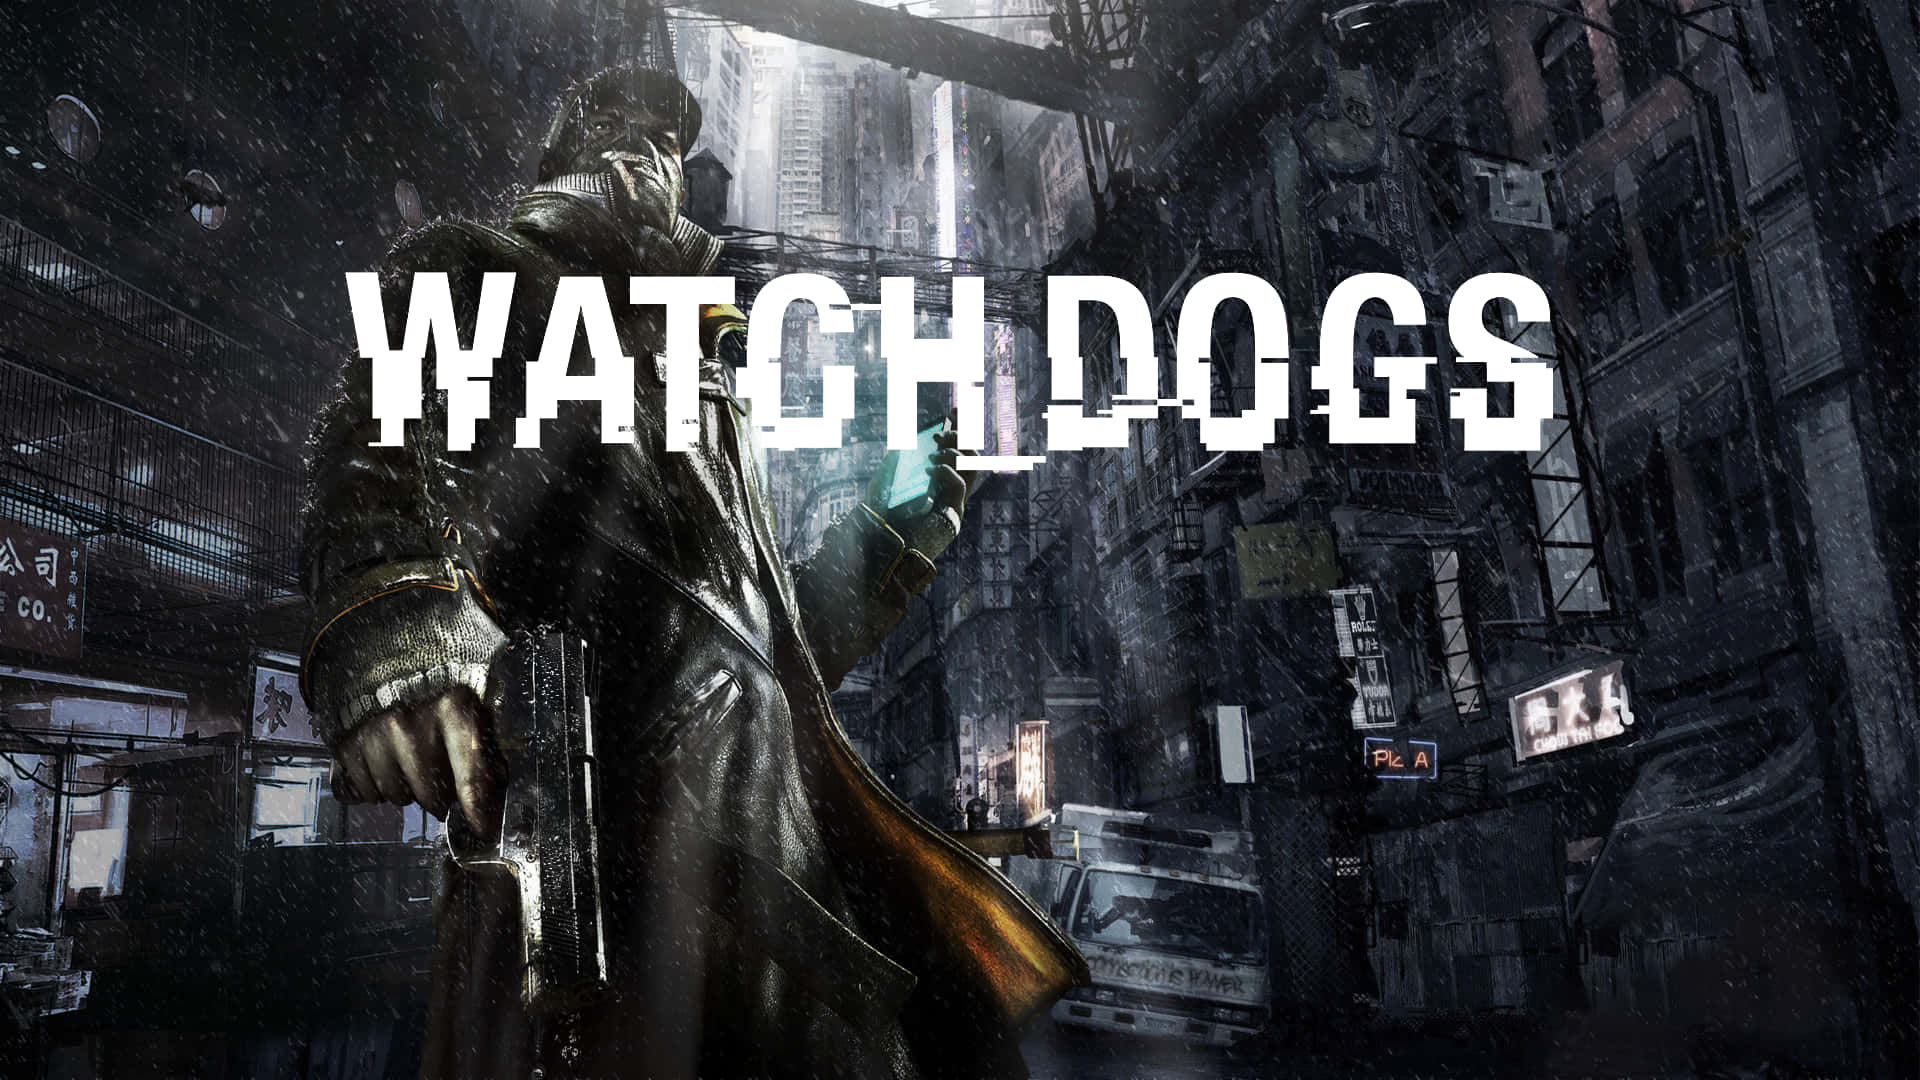 Watch Dogs Wallpaper HD  PixelsTalkNet